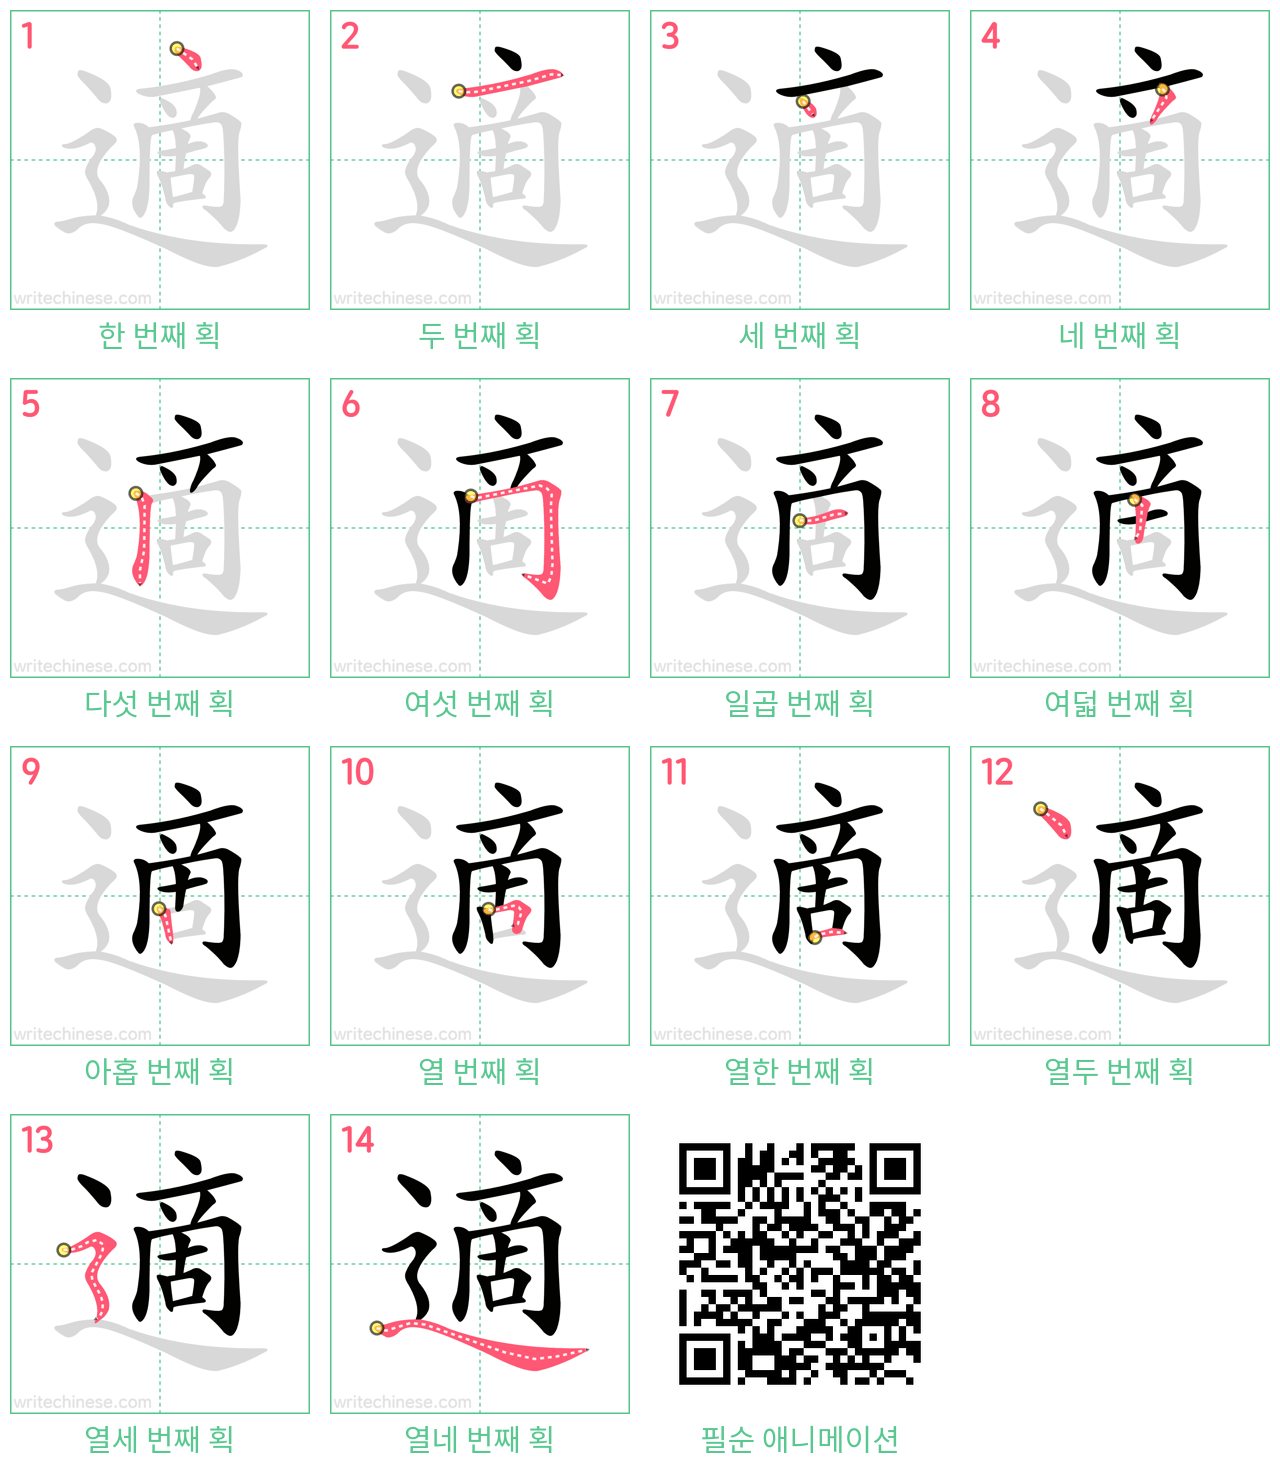 適 step-by-step stroke order diagrams